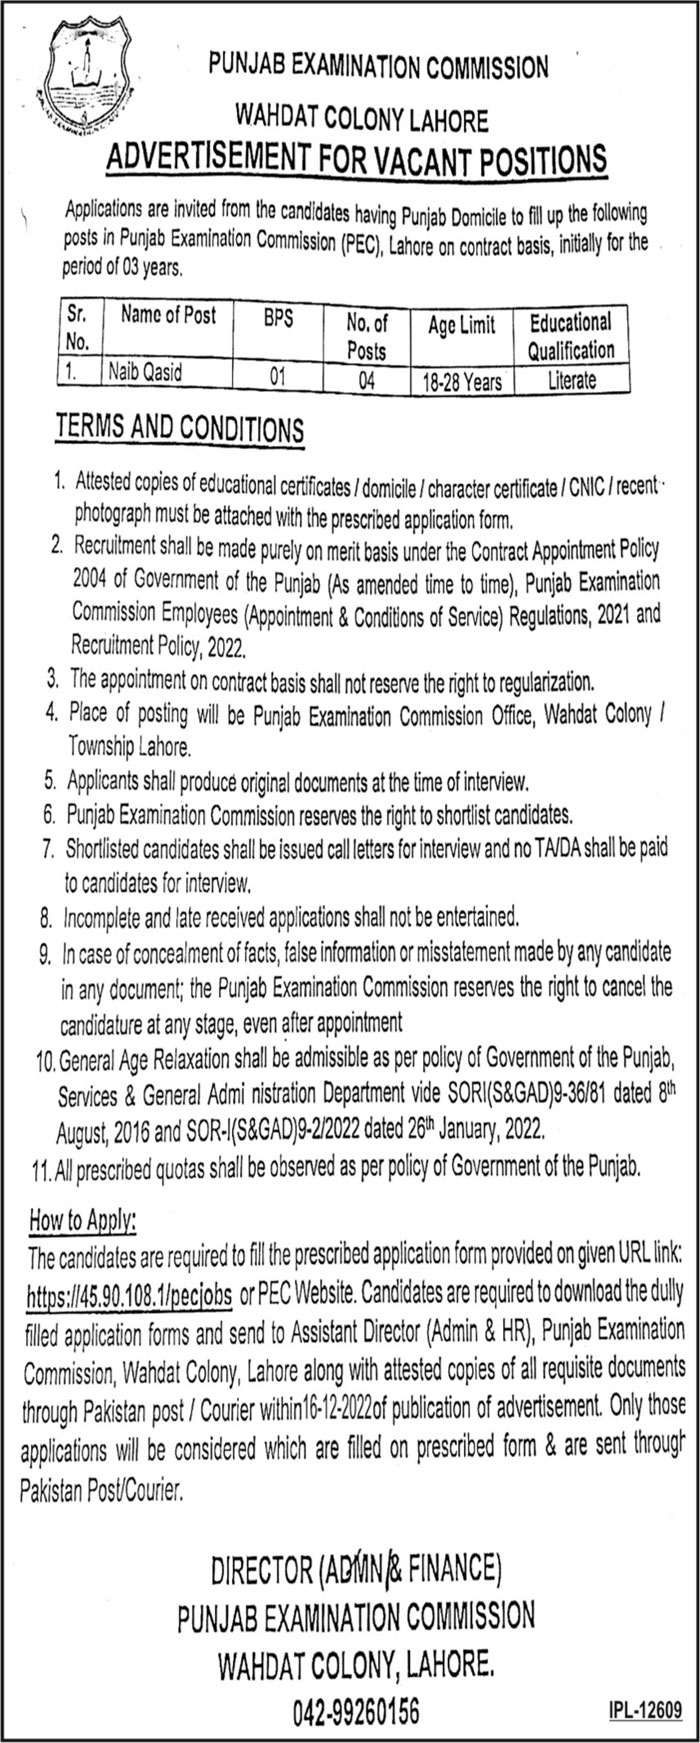 PEC Jobs 2022 | Punjab Examination Commission Headquarters Announced Latest Hiring